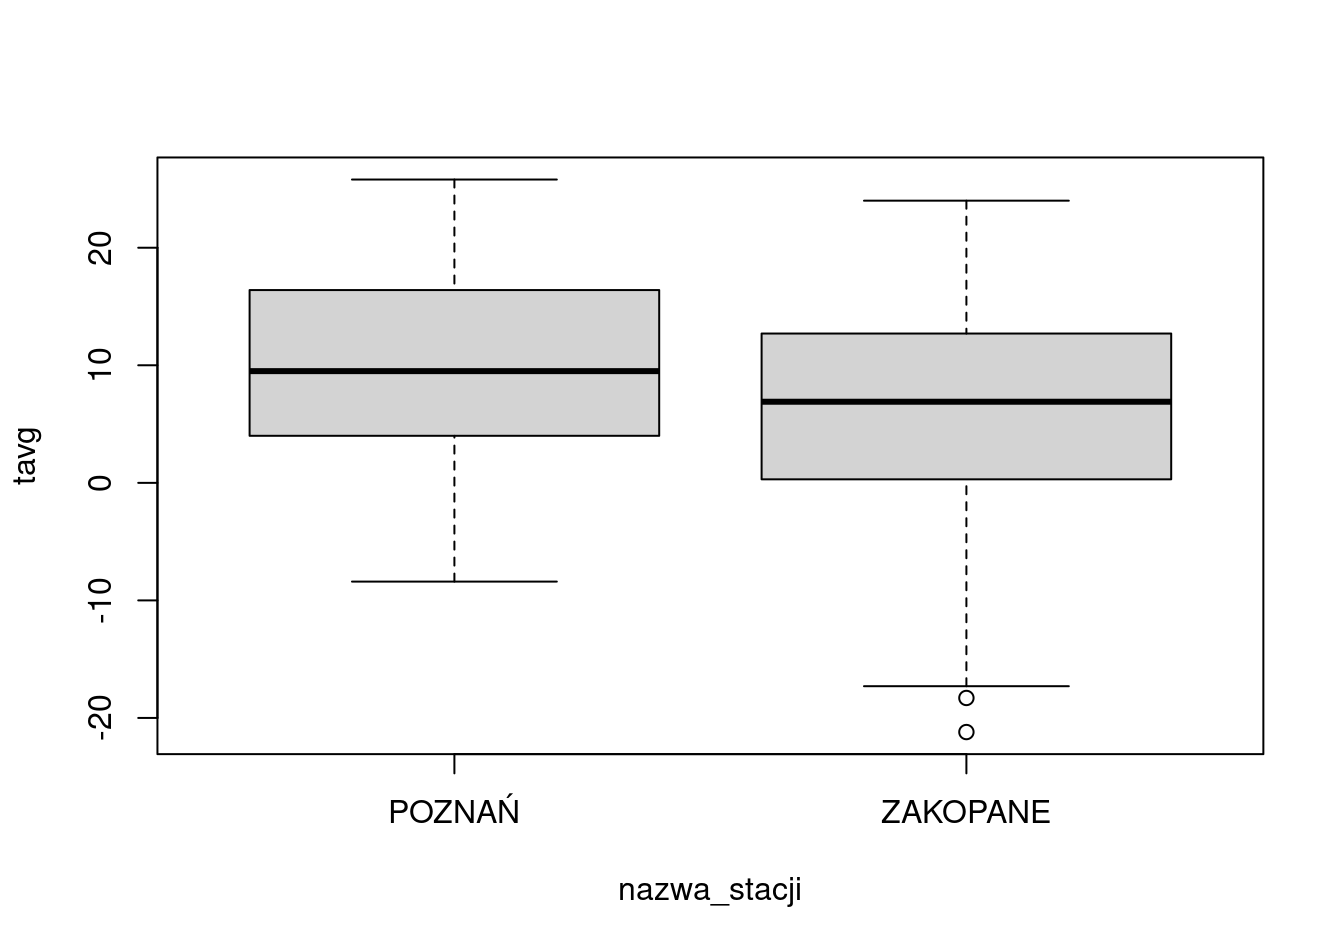 Przykład wykresu utworzonego przy pomocy funkcji boxplot().